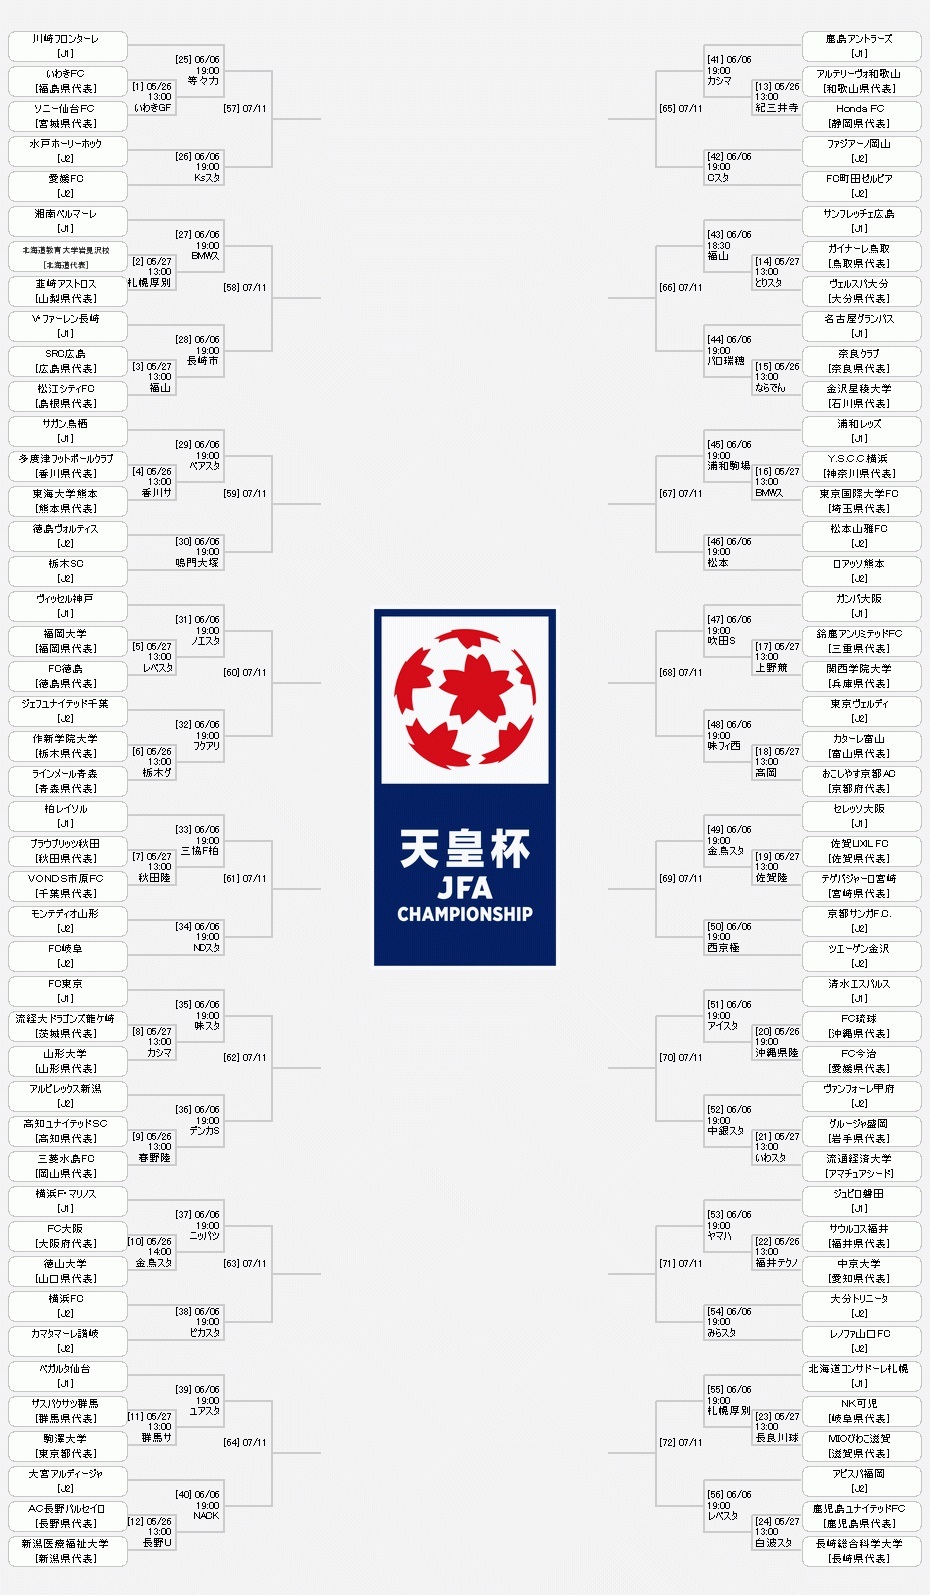 『天皇杯 JFA 第98回全日本サッカー選手権大会』の組み合わせ表